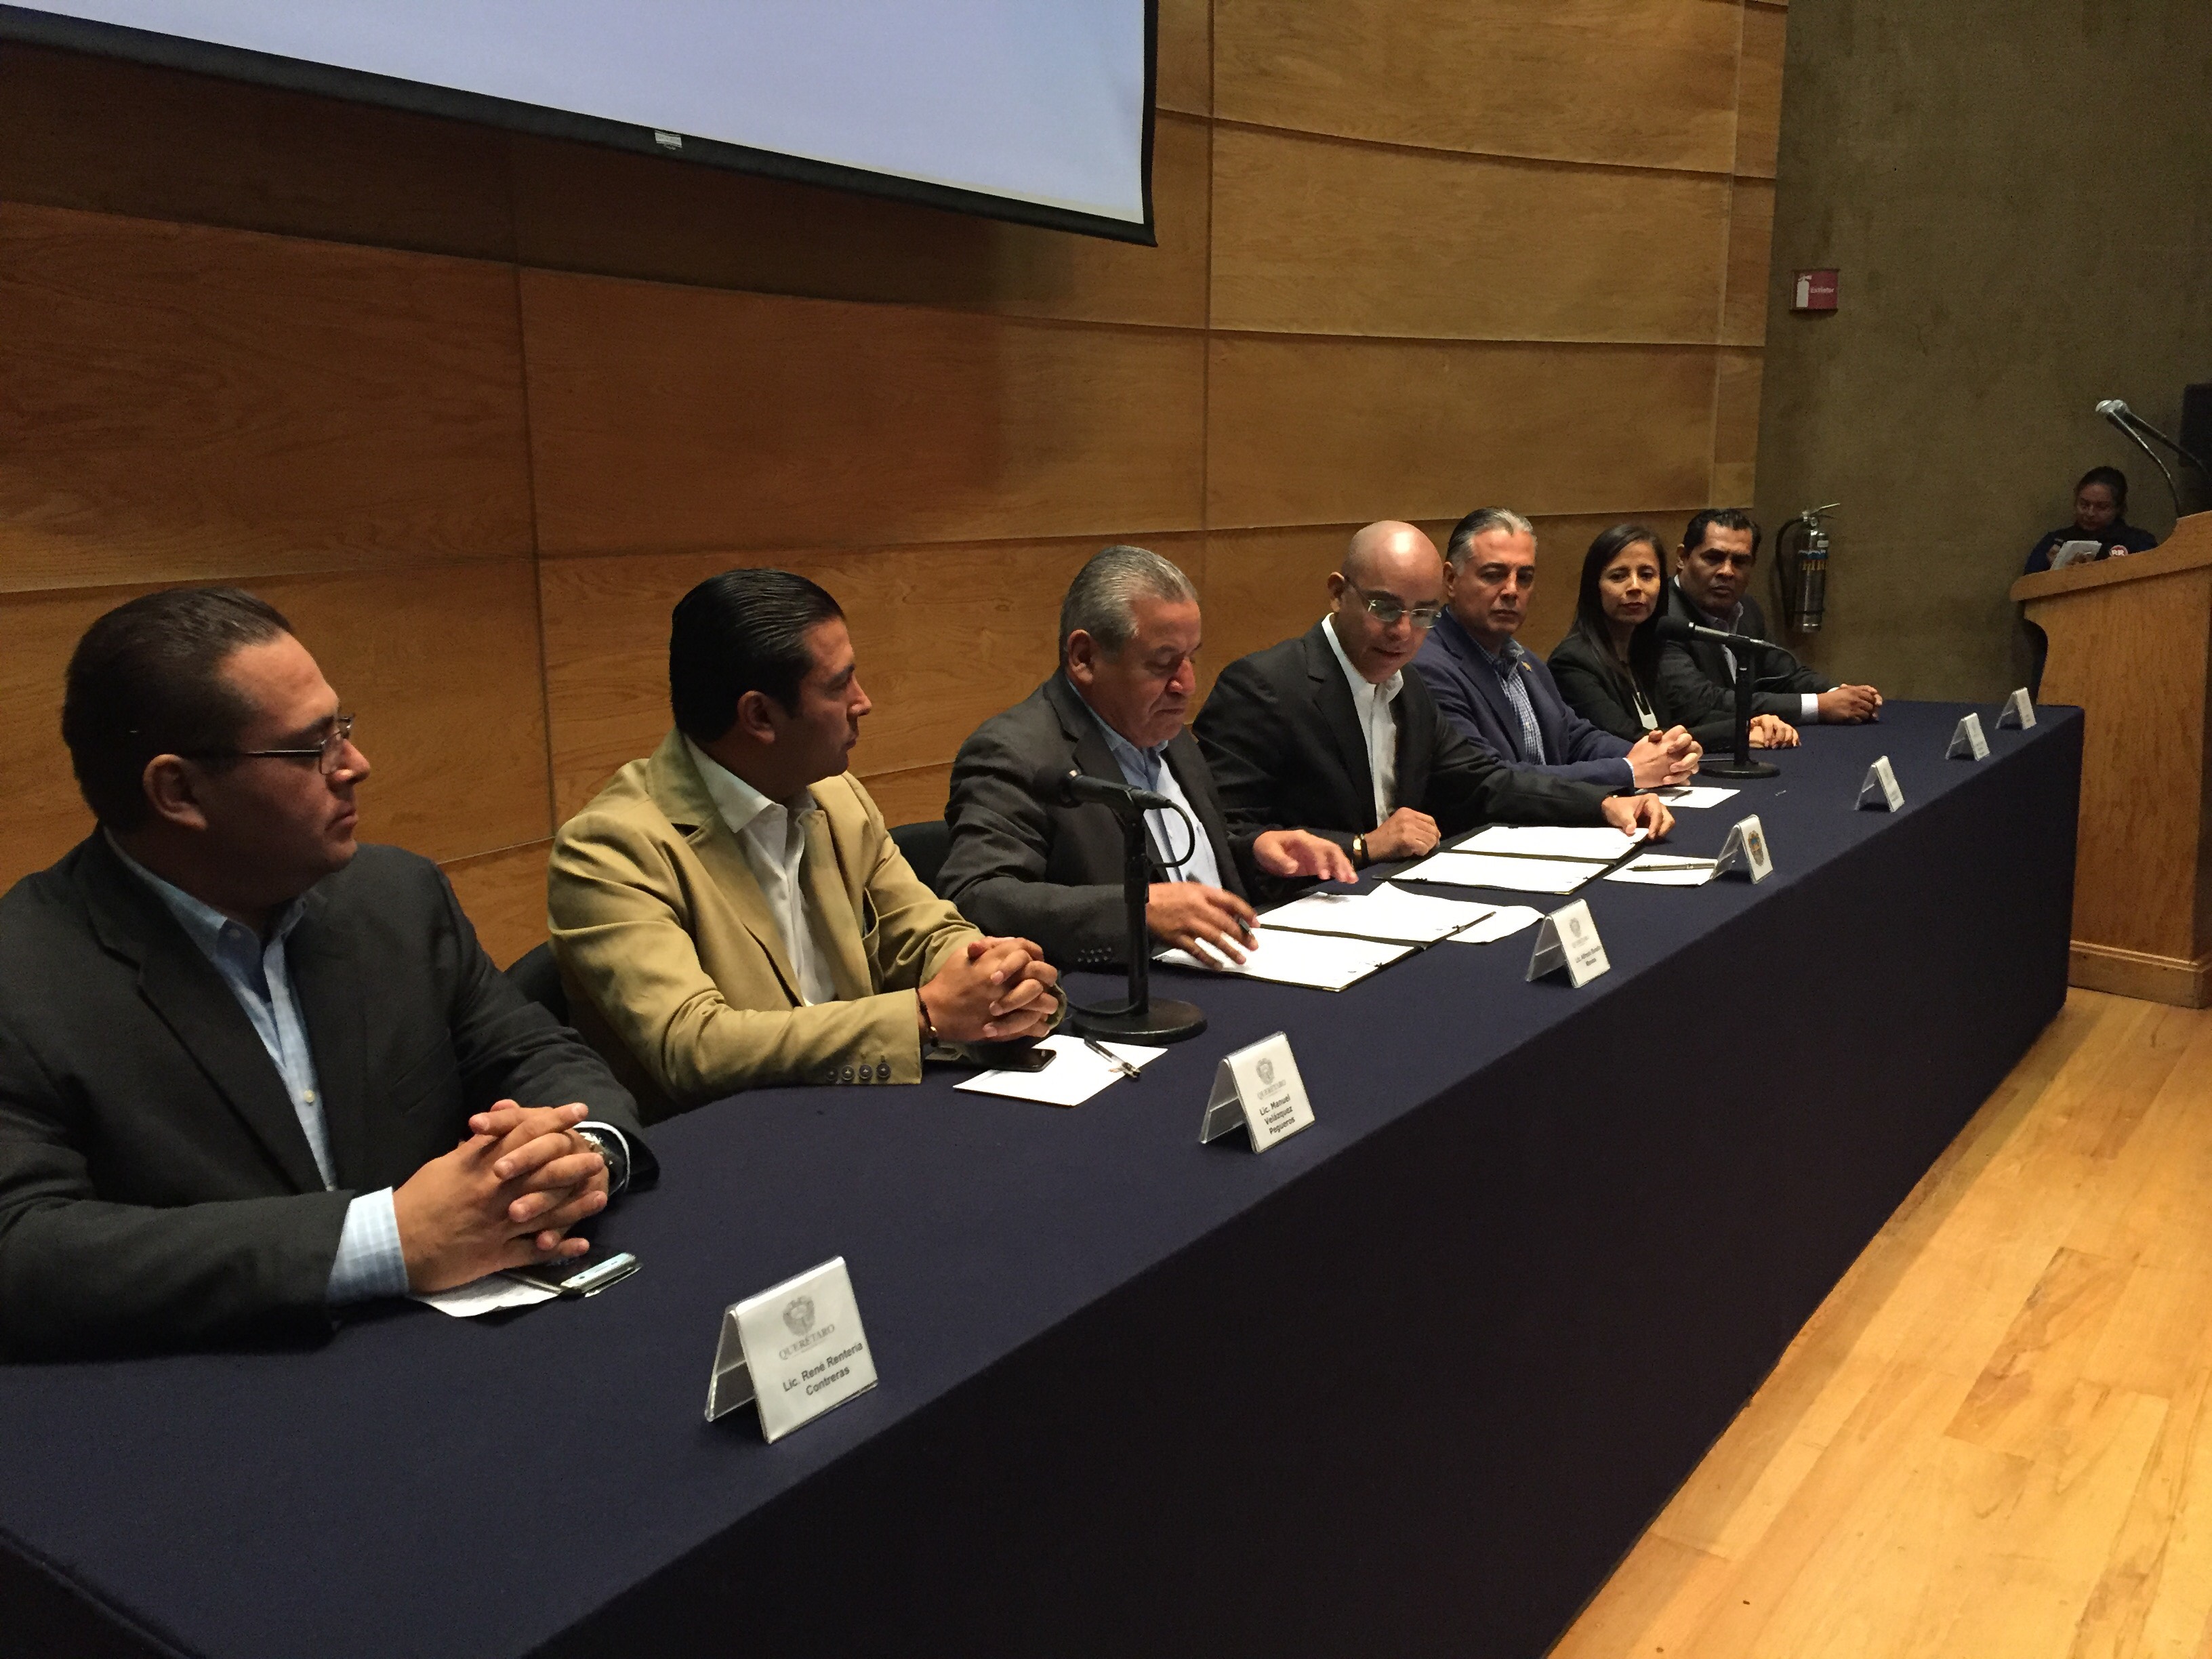  Municipio de Querétaro creará carrera técnica para policías